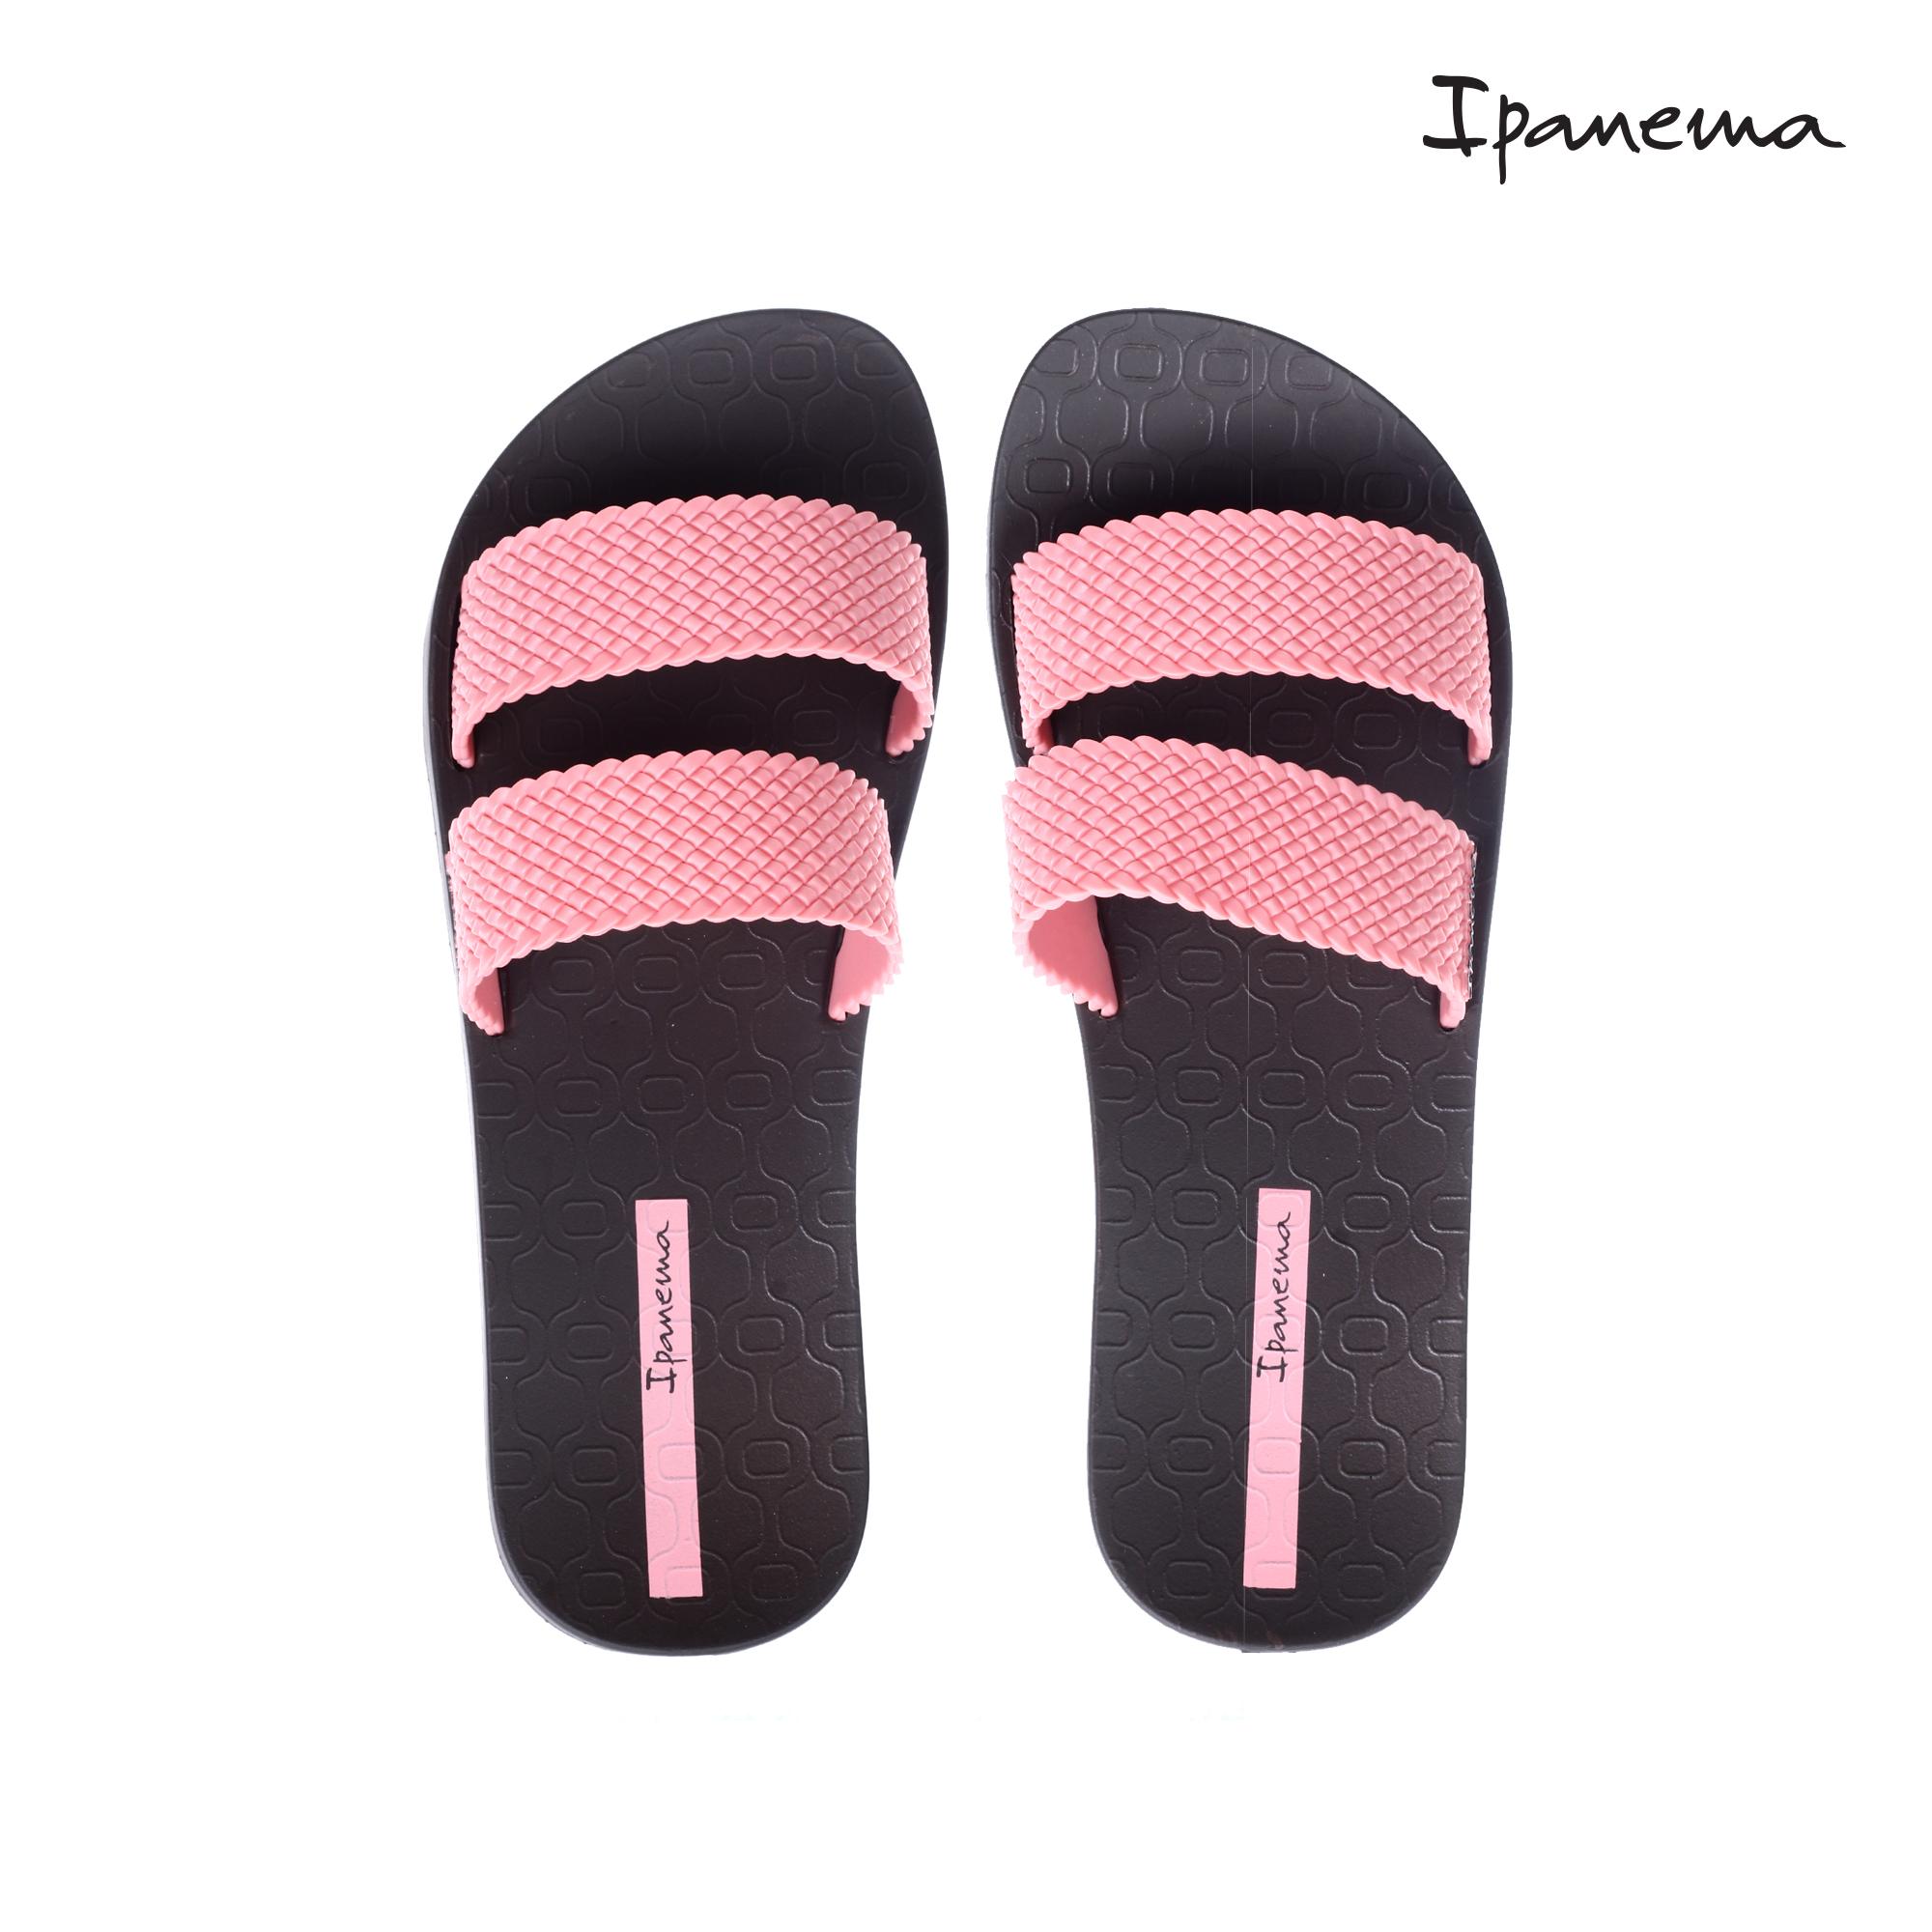 ipanema slippers price